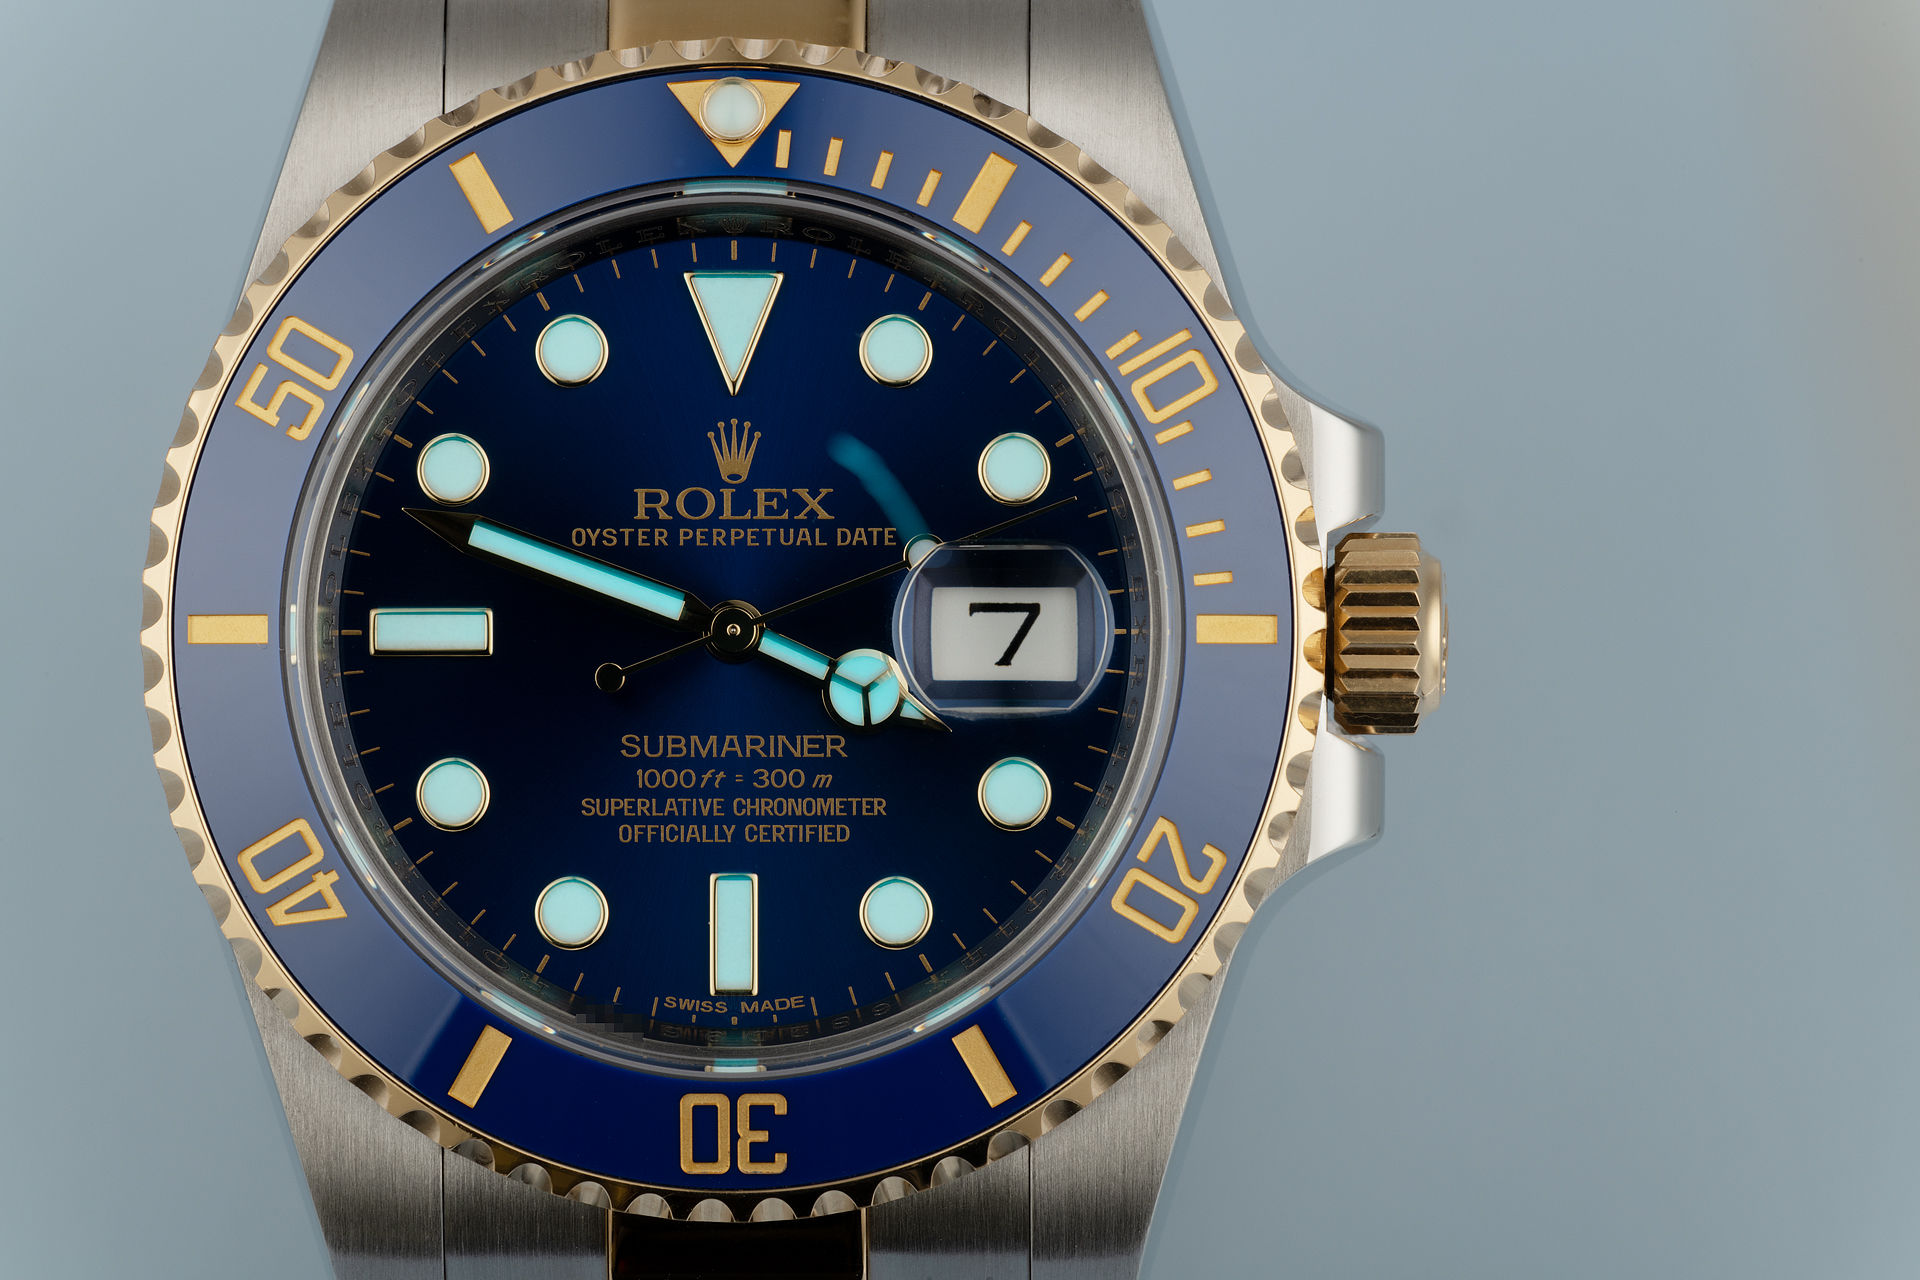 ref 116613LB | Under Rolex Warranty | Rolex Submariner Date